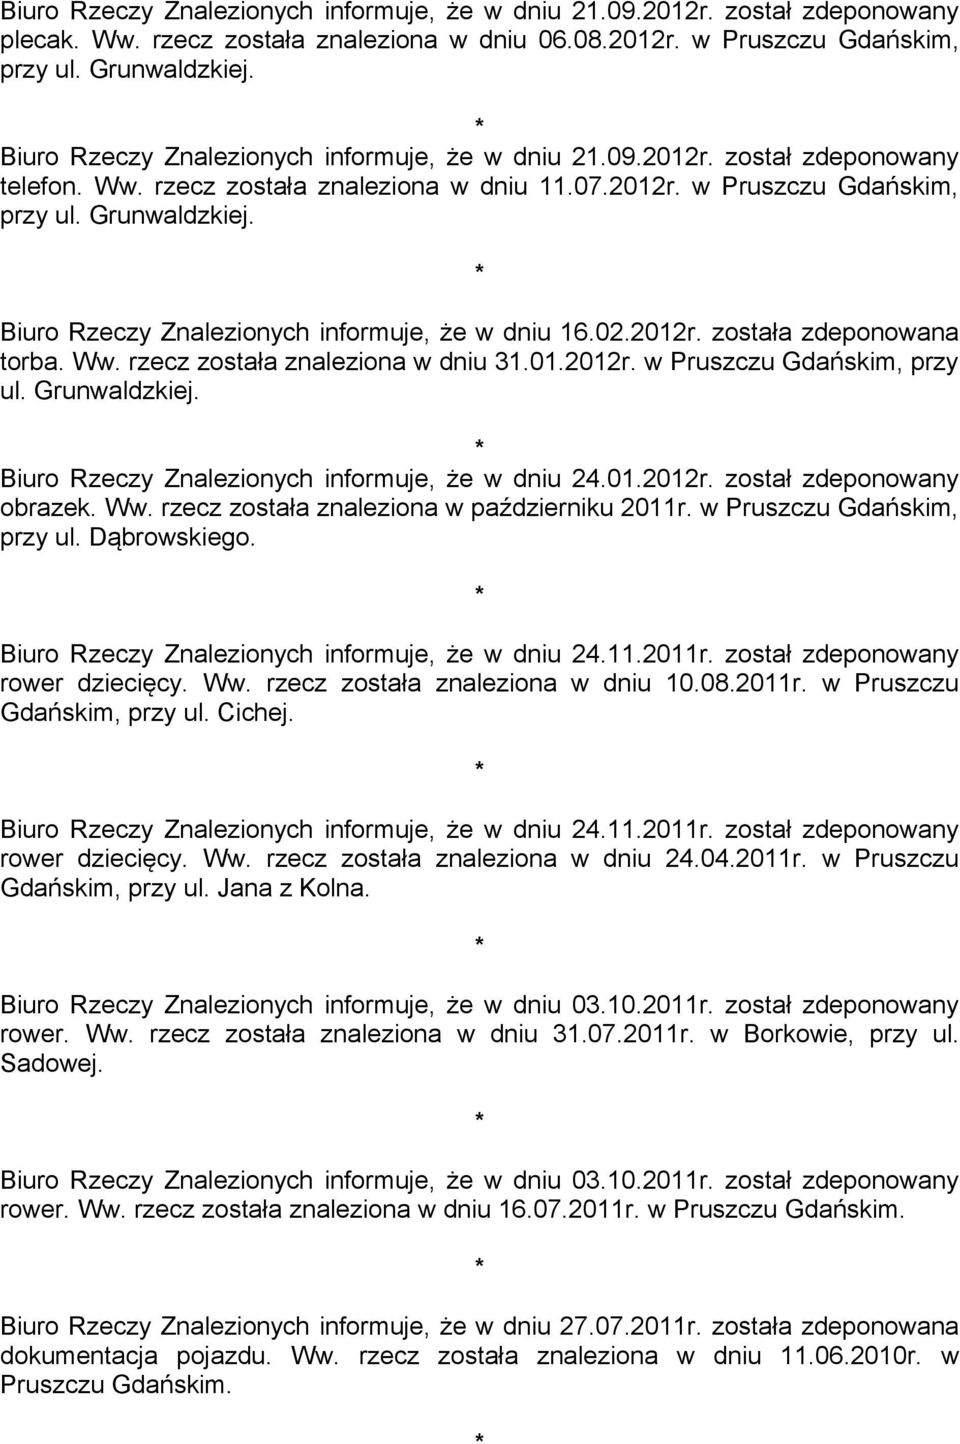 Biuro Rzeczy Znalezionych informuje, że w dniu 16.02.2012r. została zdeponowana torba. Ww. rzecz została znaleziona w dniu 31.01.2012r. w Pruszczu Gdańskim, przy ul. Grunwaldzkiej.